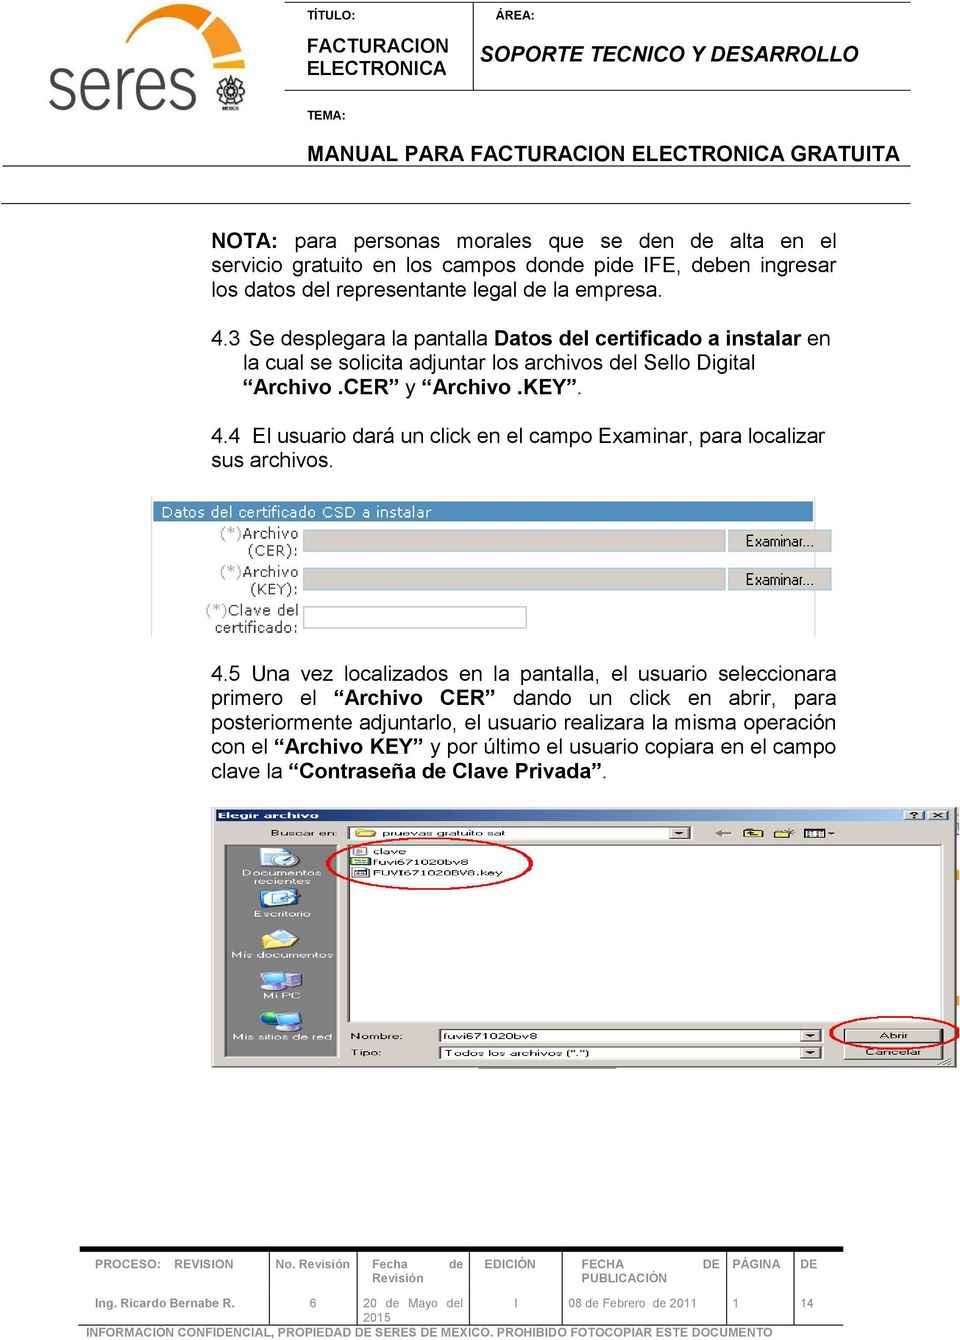 4.5 Una vez localizados en la pantalla, el usuario seleccionara primero el Archivo CER dando un click en abrir, para posteriormente adjuntarlo, el usuario realizara la misma operación con el Archivo